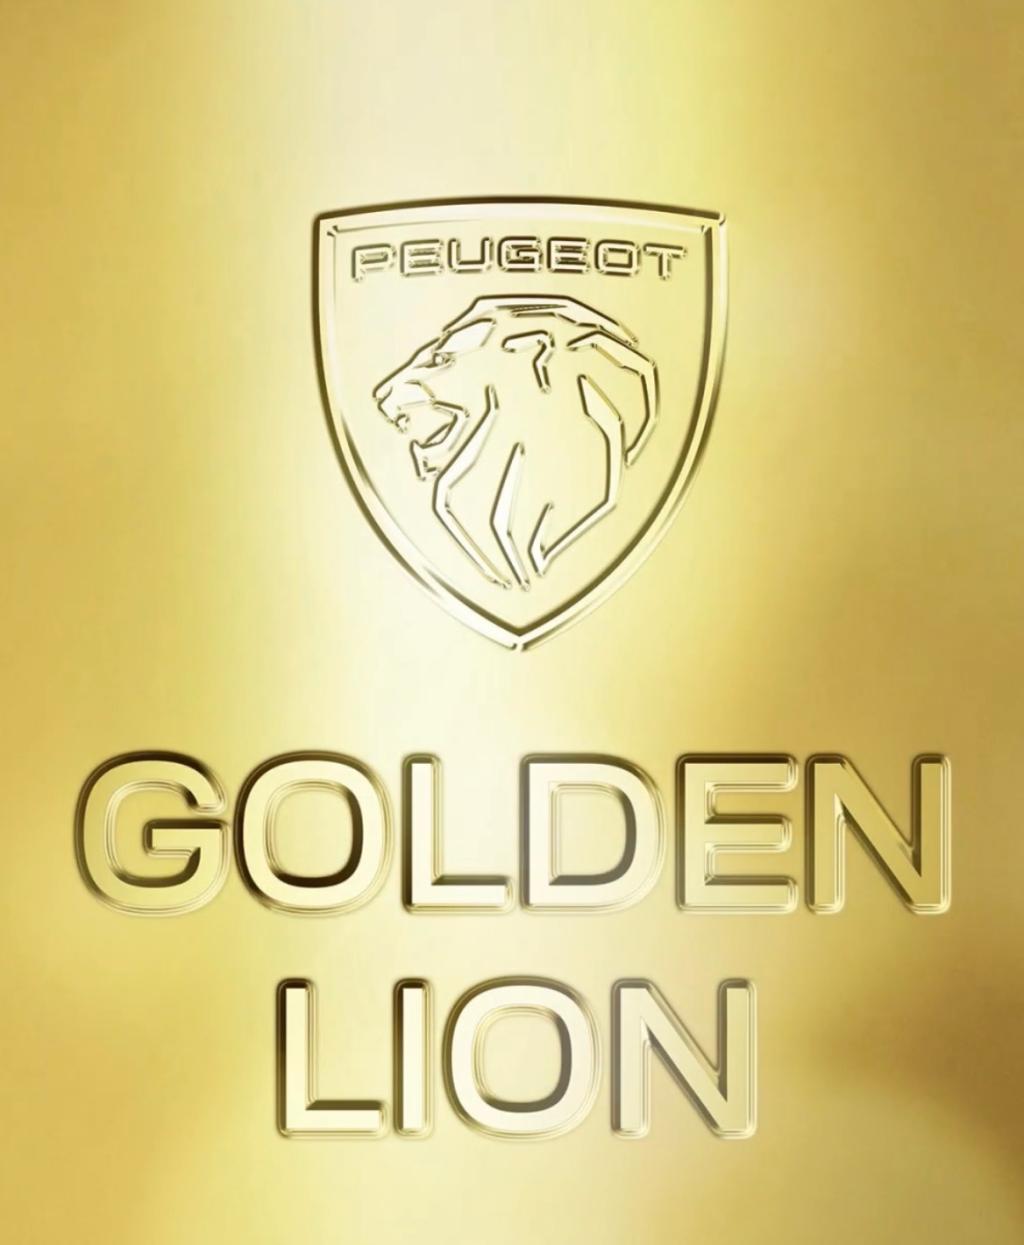 GOLDEN LION CHALLENGE！！